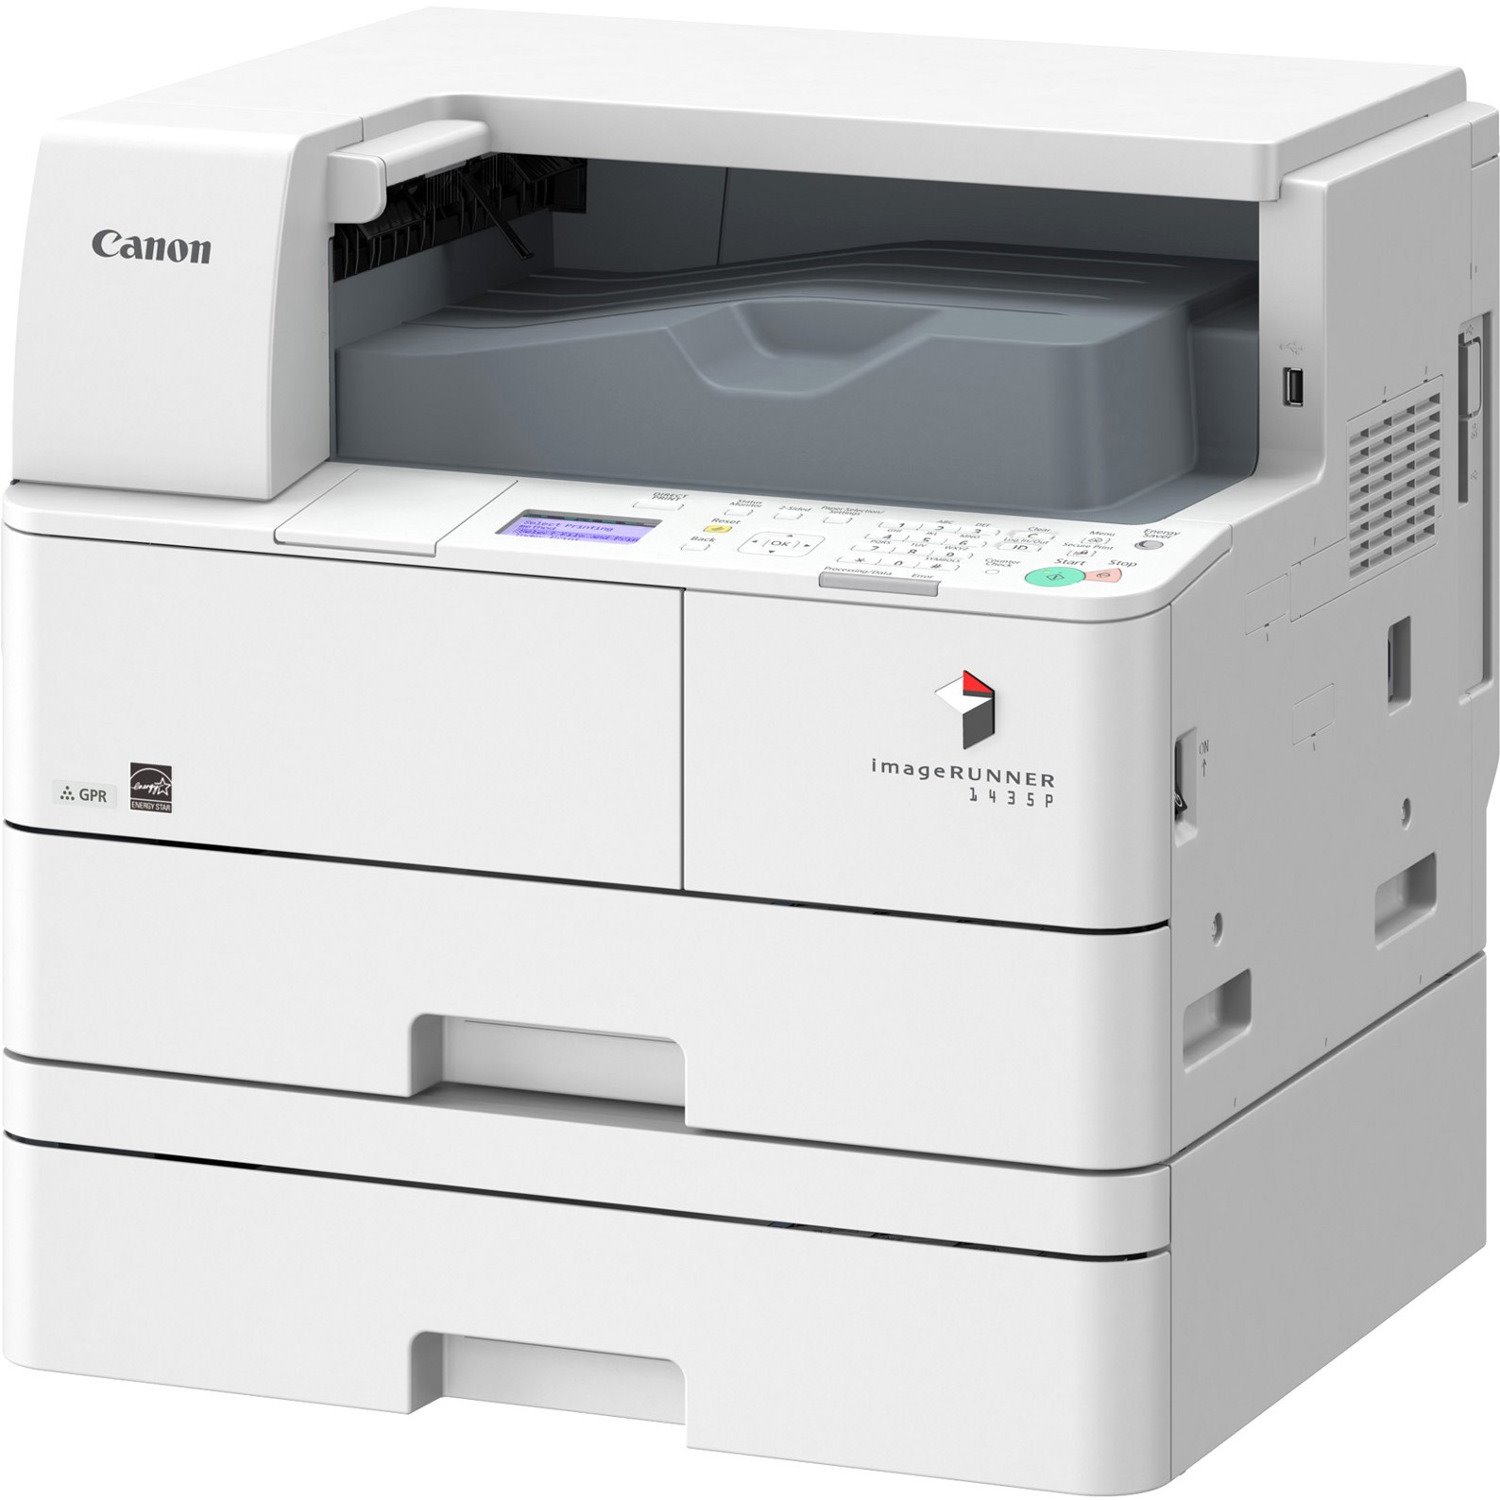 Canon imageRUNNER 1435P Desktop Laser Printer - Monochrome